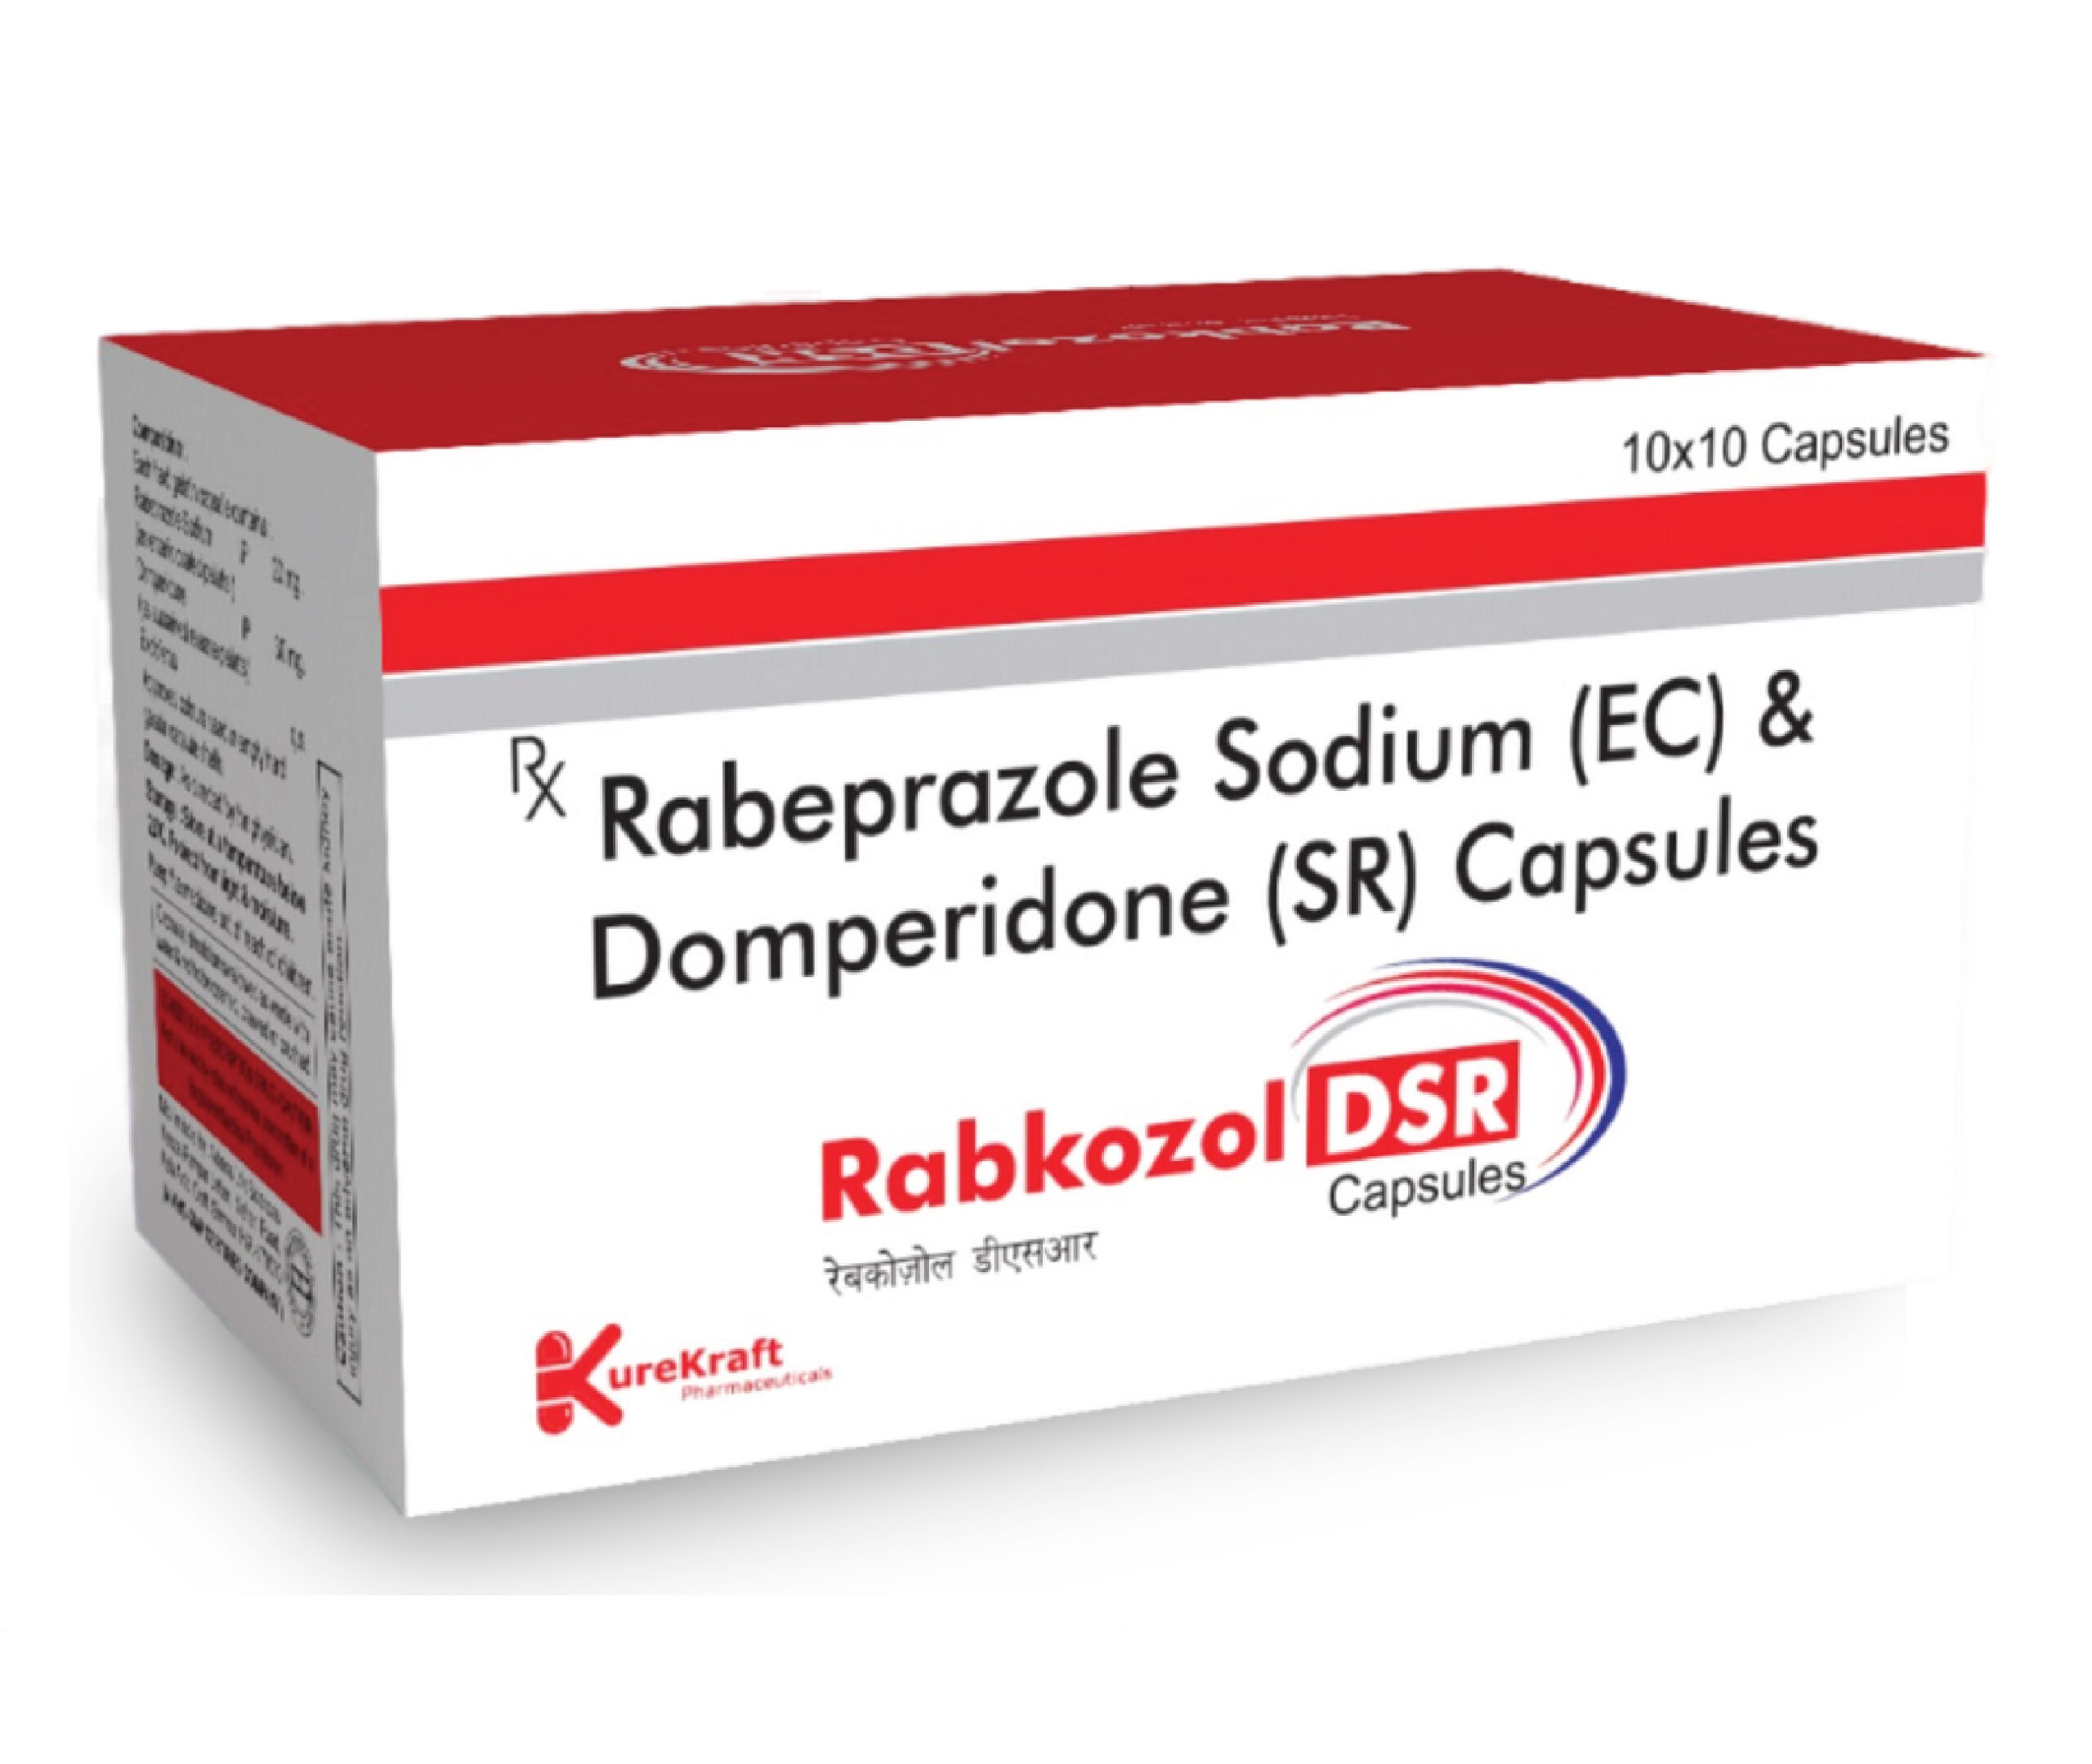 Rabkozol-DSR Capsules - Rabeprazole 20mg EC + Domperidone 30mg SR